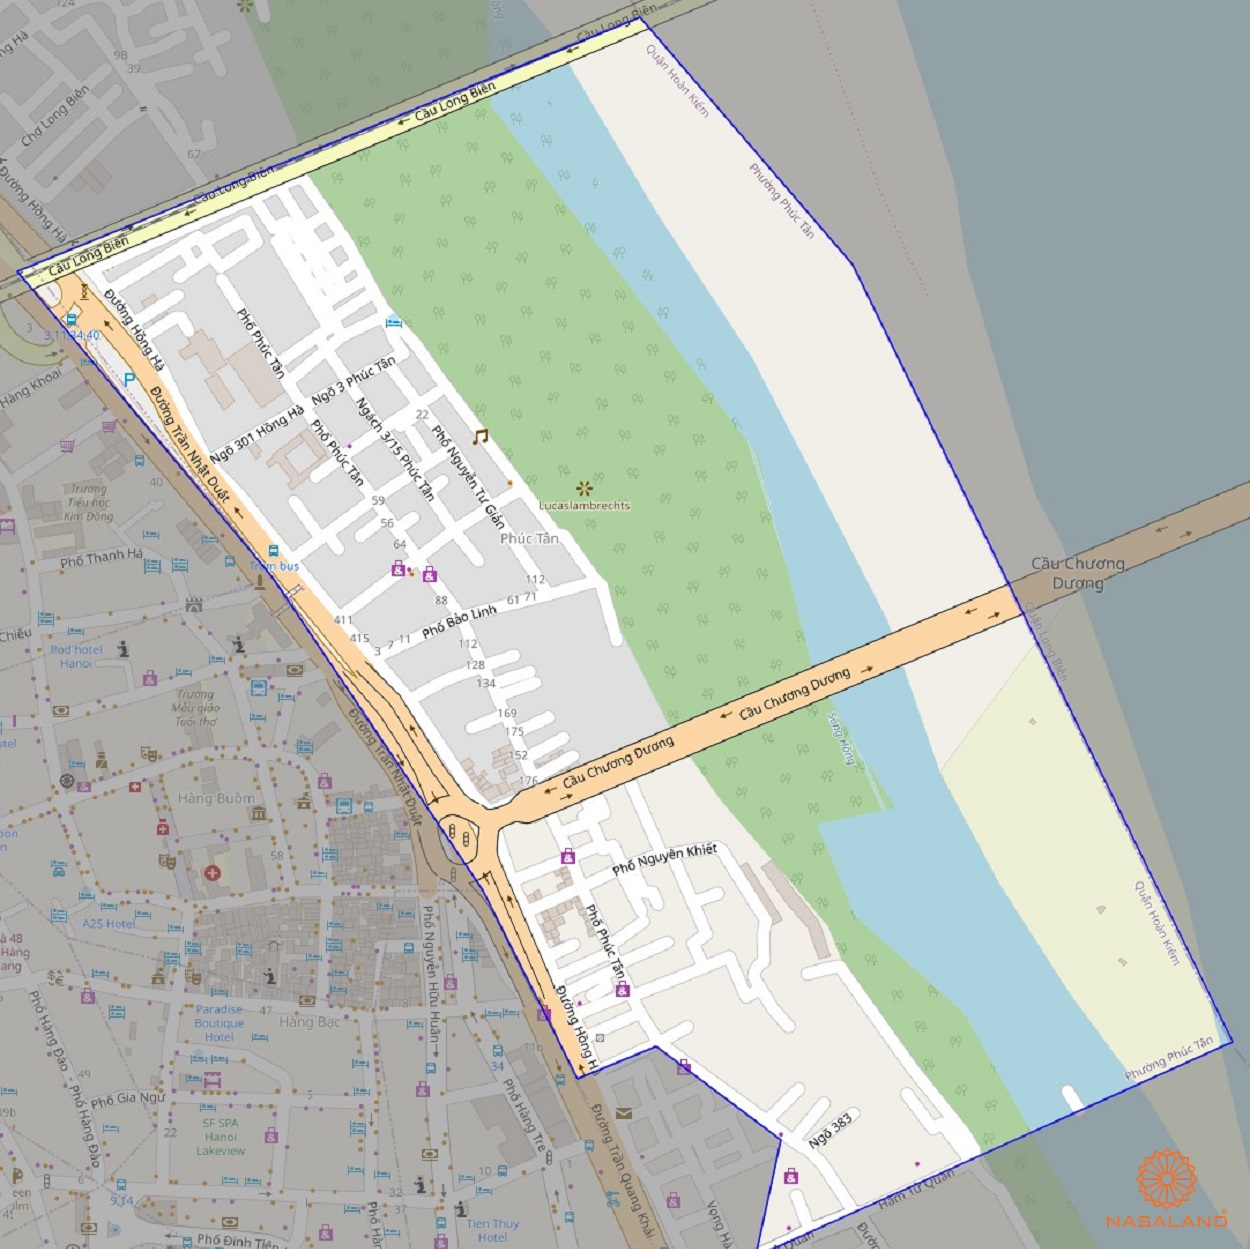 Bản đồ quy hoạch sử dụng đất Phường Phúc Tân theo bản đồ quy hoạch sử dụng đất năm 2020 Quận Hoàn Kiếm, Thành phố Hà Nội.